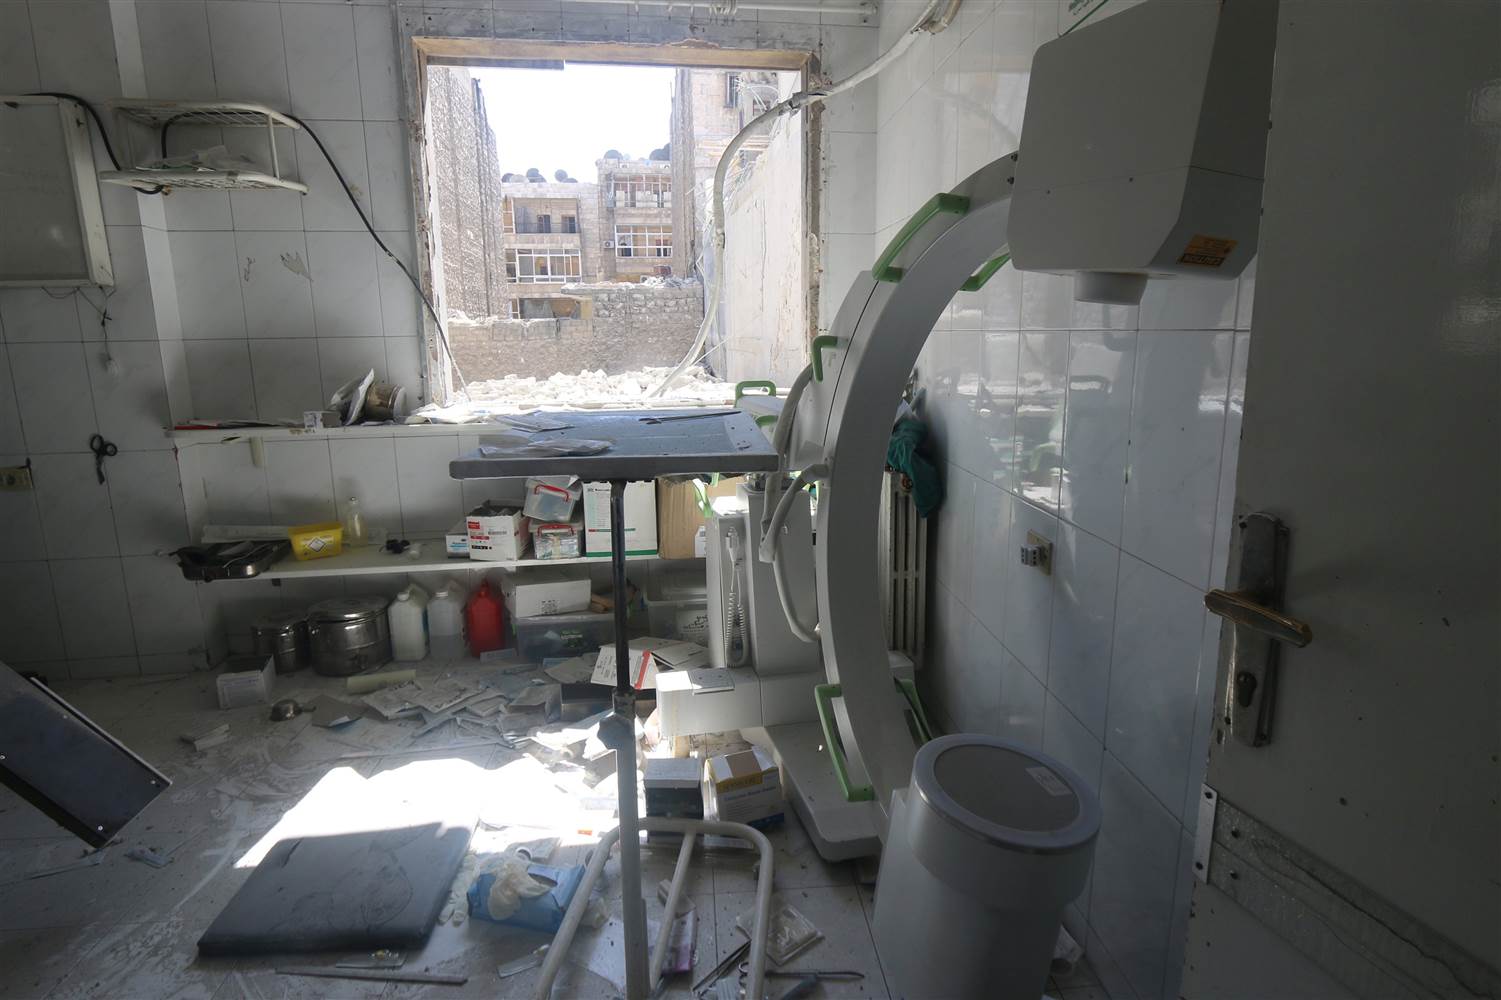  Bombardeos destruyen casi todos los hospitales de la ciudad de Alepo, en Siria